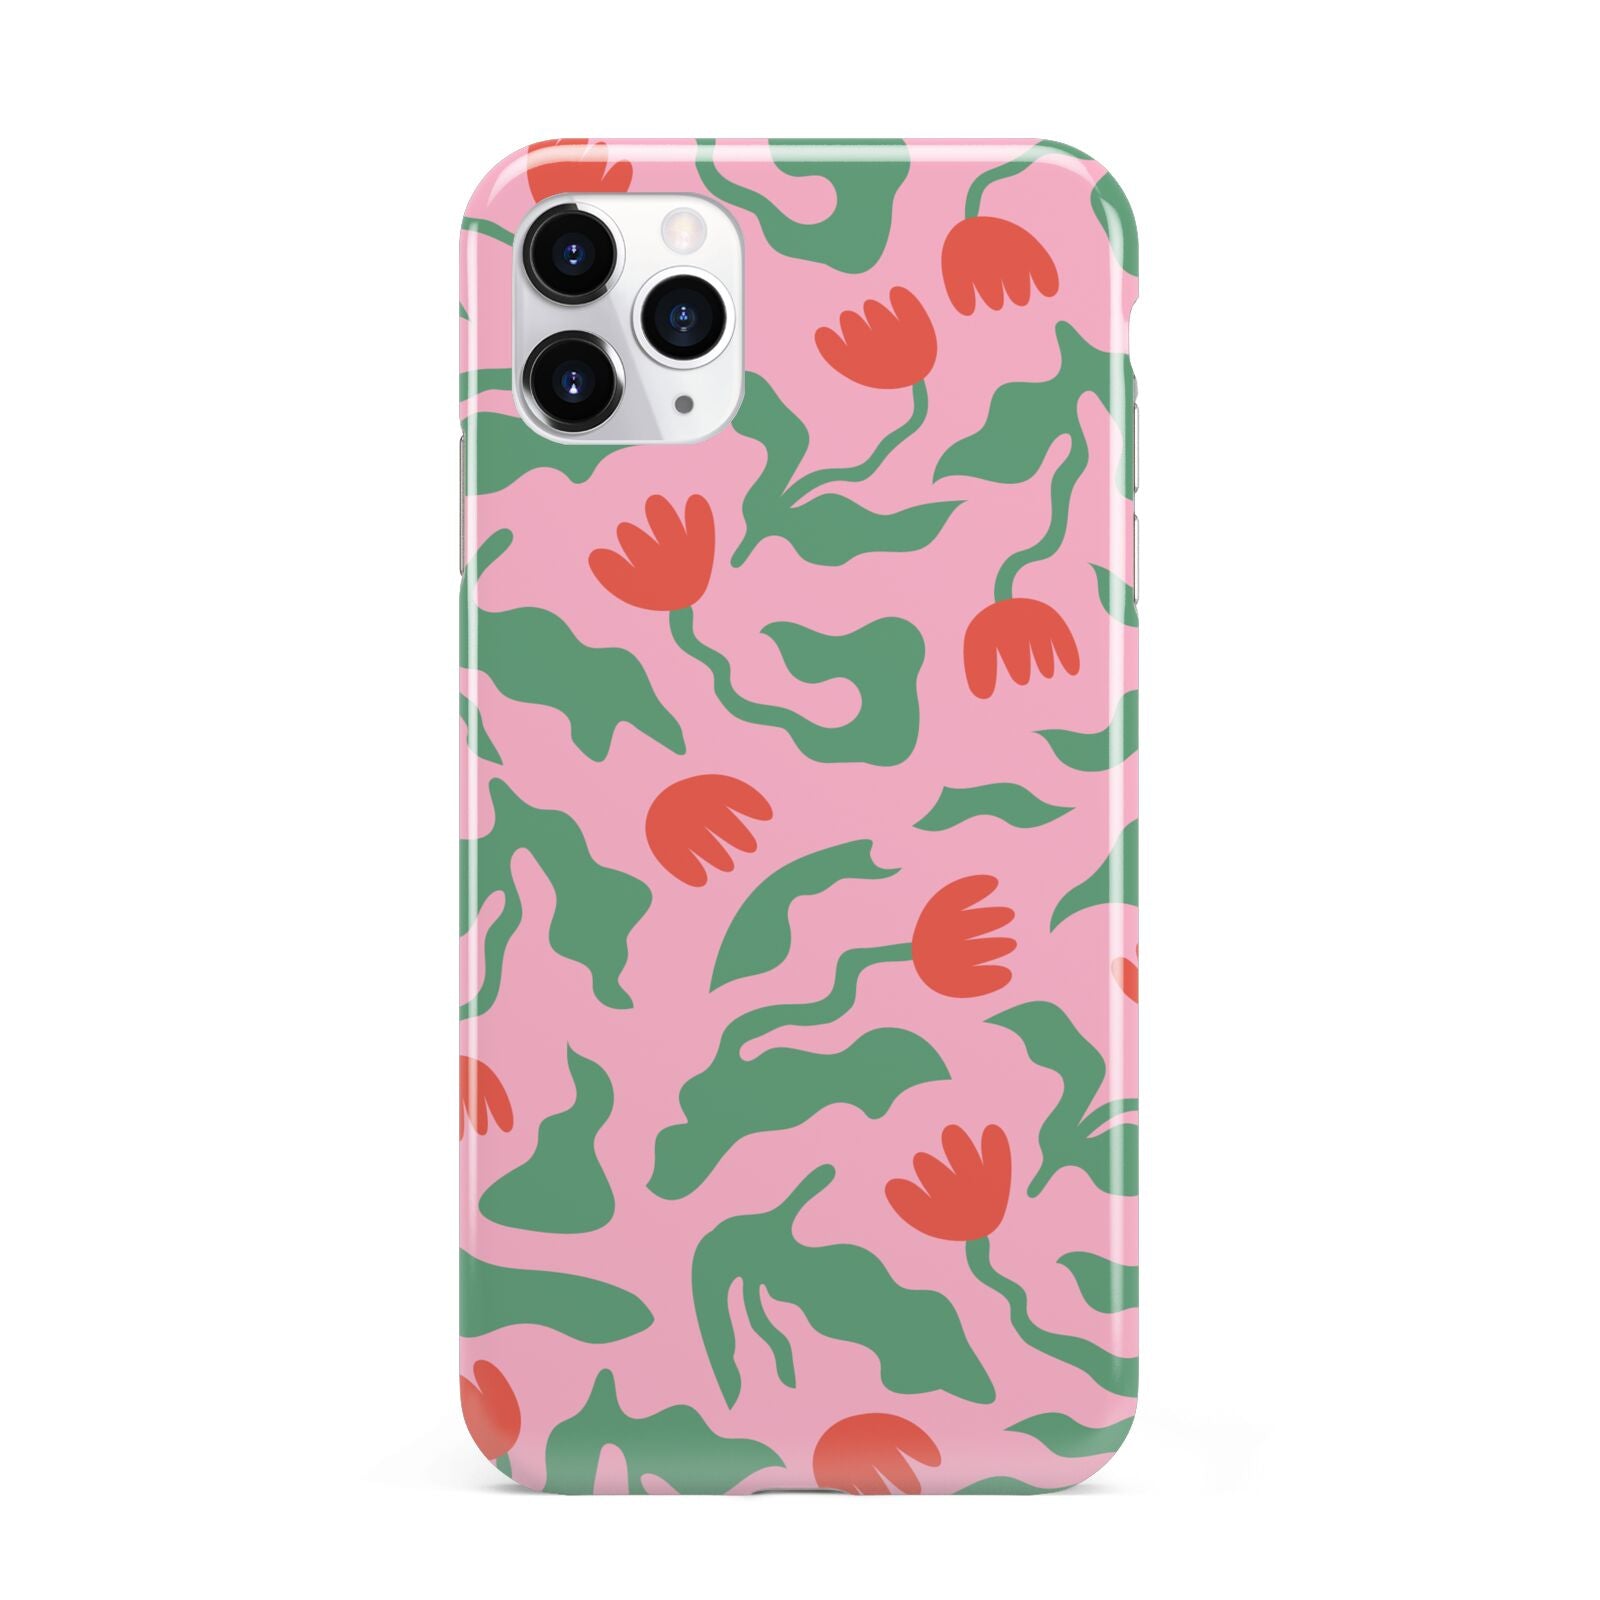 Simple Floral iPhone 11 Pro Max 3D Tough Case